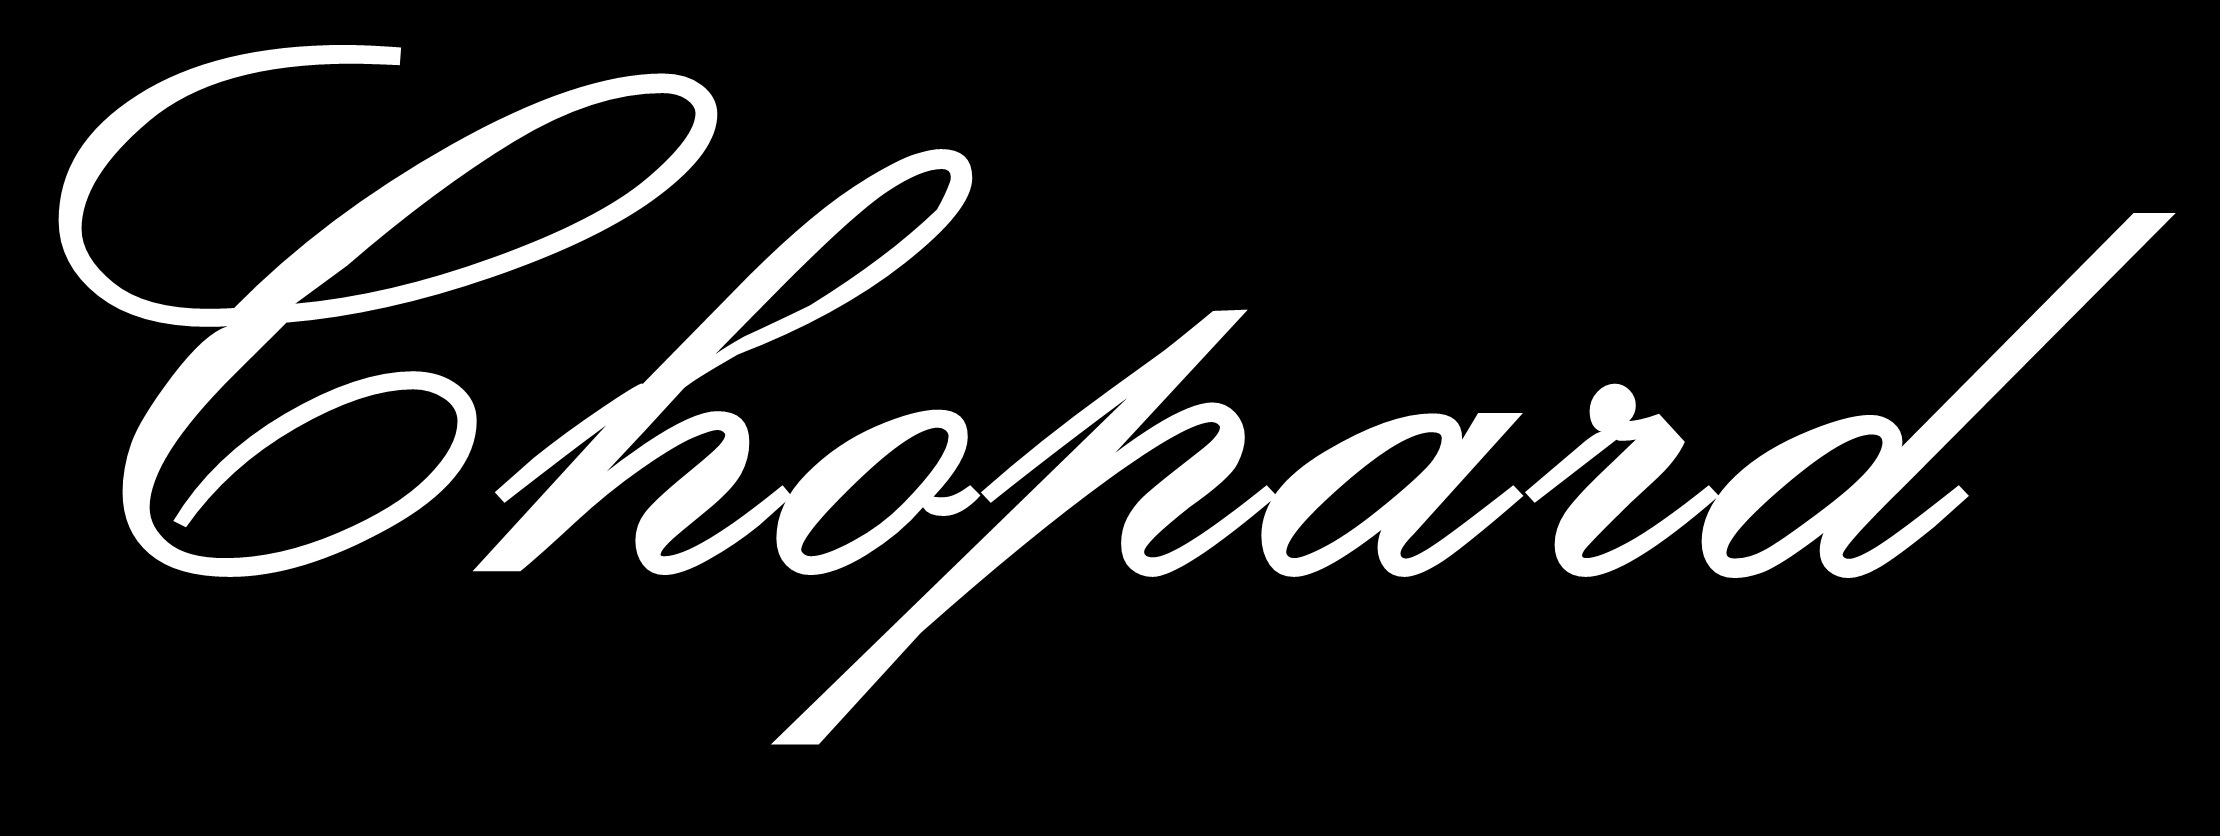 Chopard-logo-wallpaper